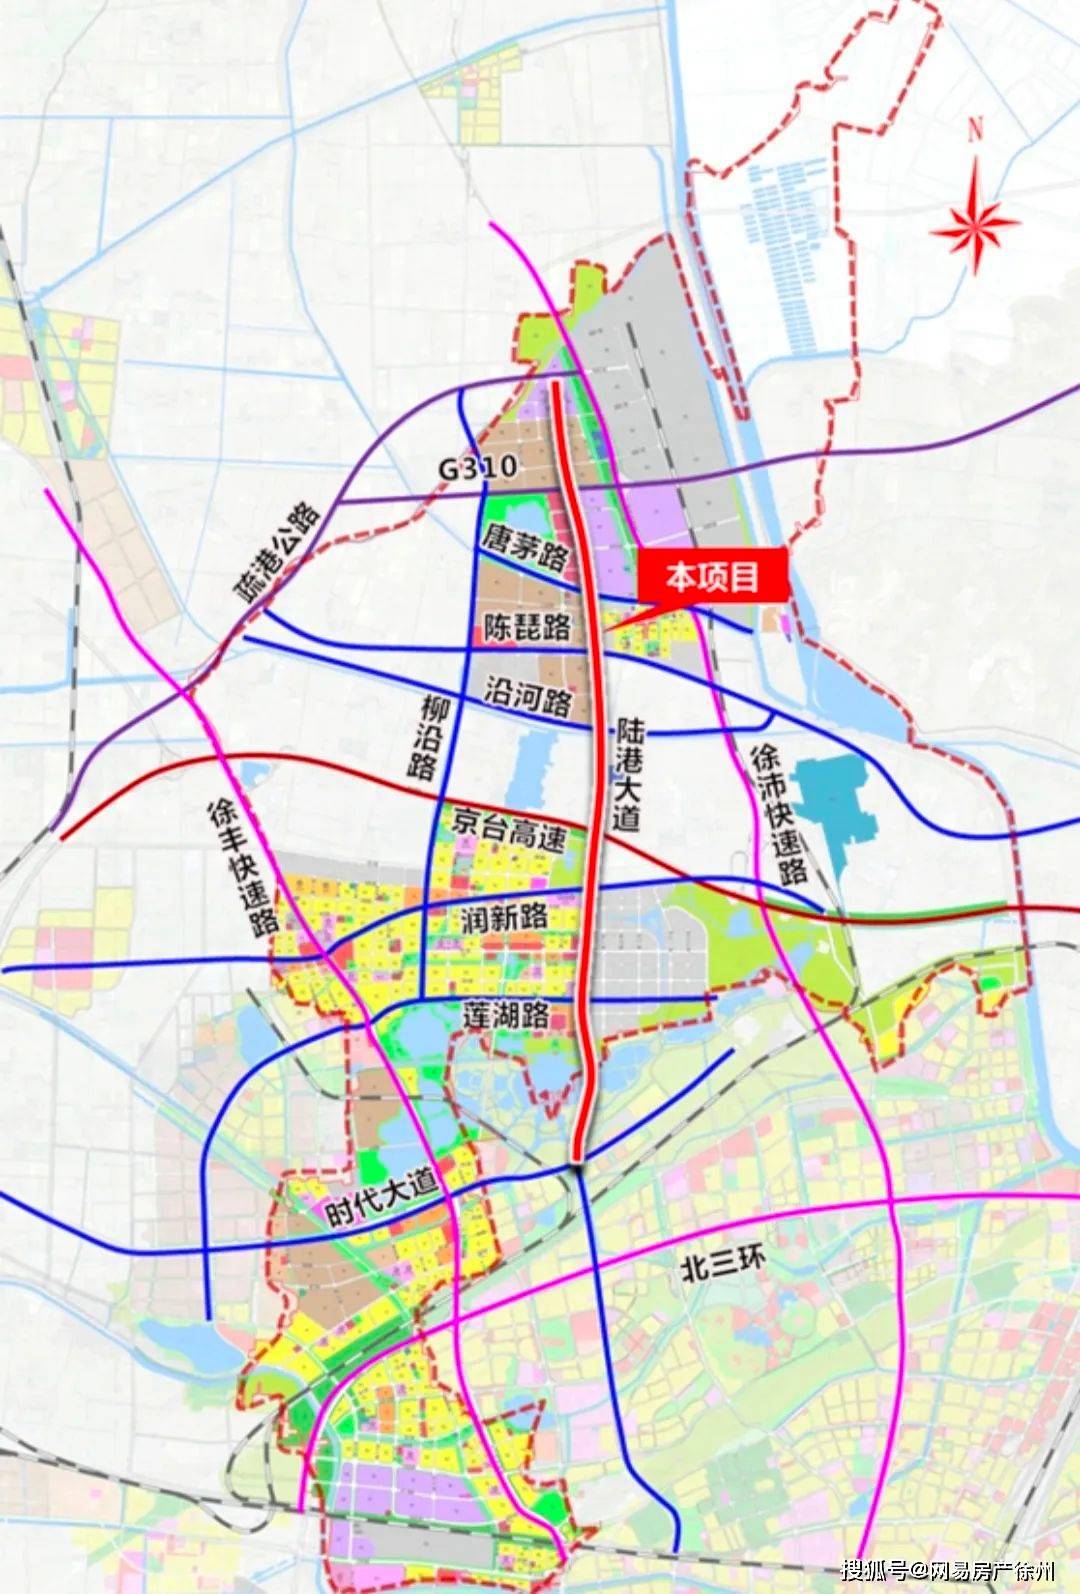 陆港大道示意图▼根据规划,徐州陆港大道项目是徐州淮海国际港务区内